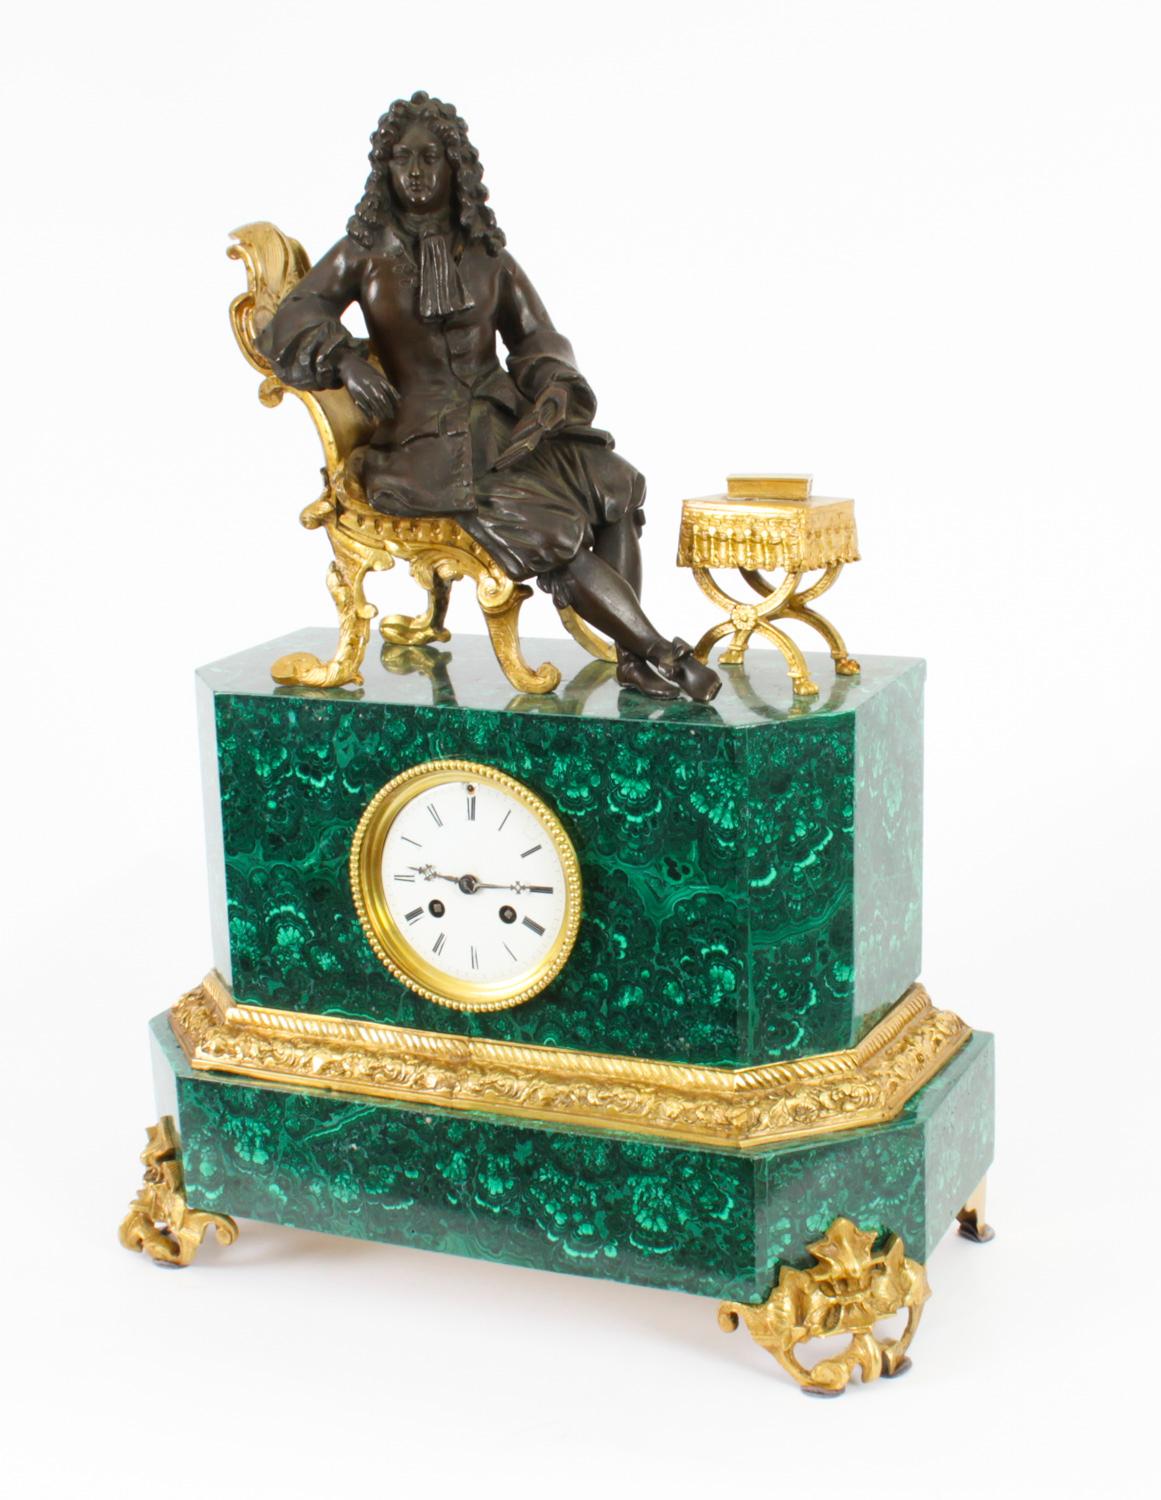 Il s'agit d'une superbe pendule de cheminée française ancienne en malachite, bronze et bronze doré, datant d'environ 1850.

Elle représente Louis XVI assis sur un trône en bronze doré et lisant un livre.

Le nom de l'horloger est inscrit sur la